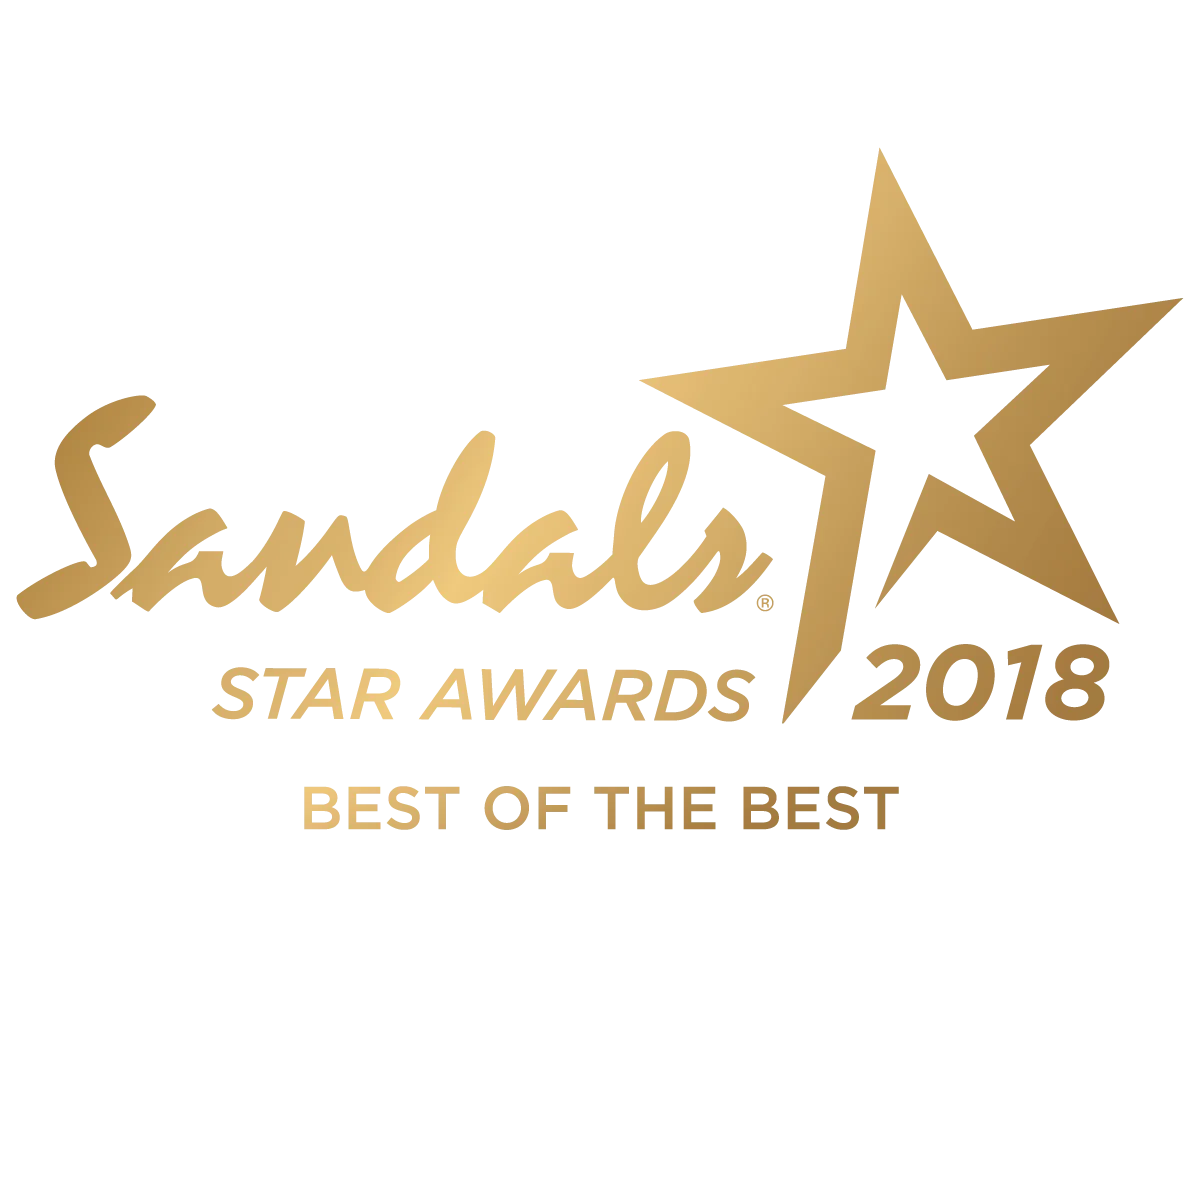 https://lindadancer.com/wp-content/uploads/2019/02/Sandals-STAR-AWARDS-2018.png